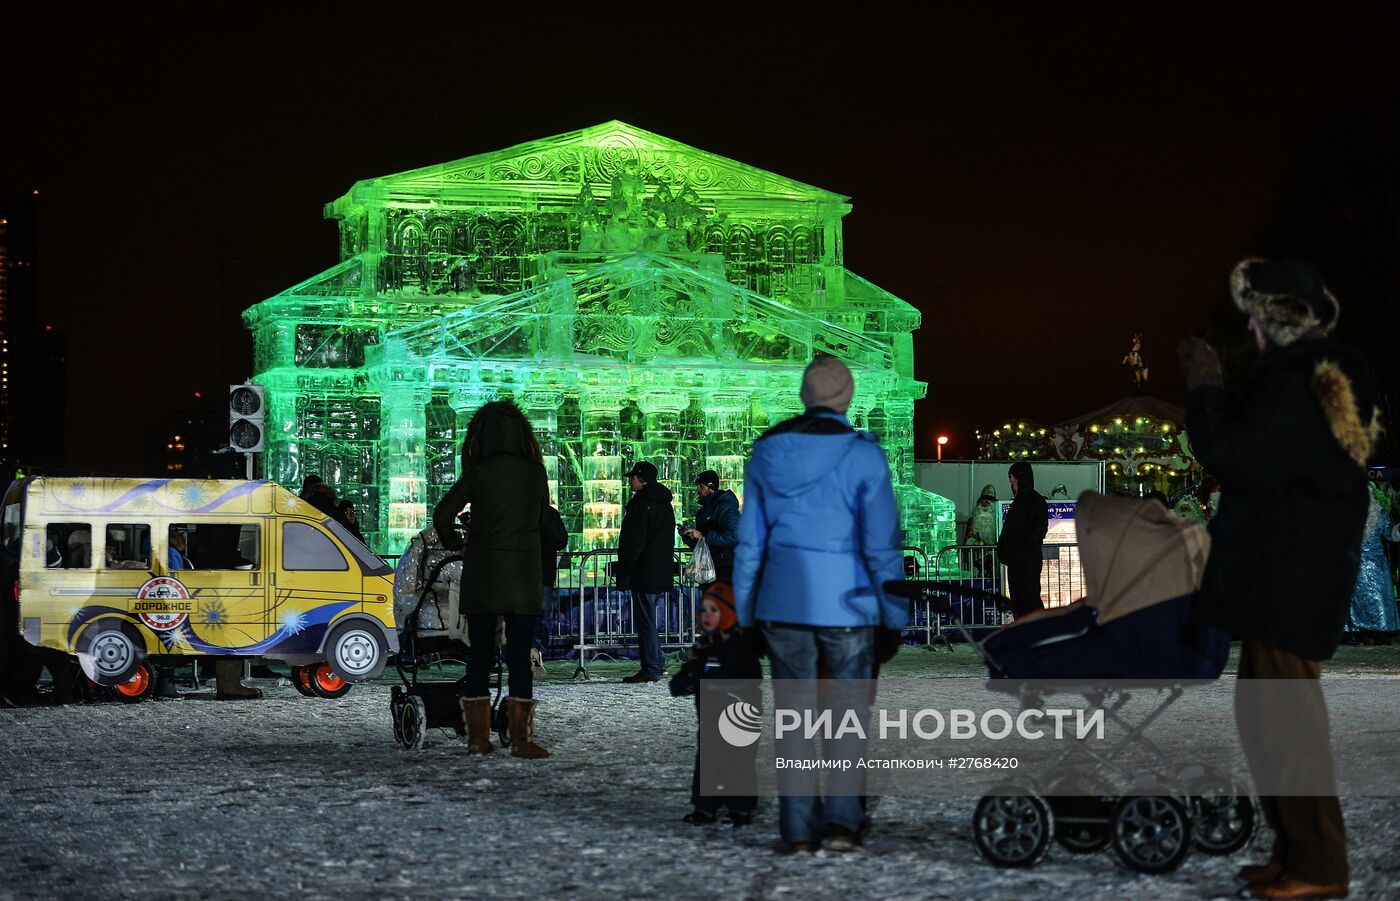 Открытие фестиваля "Ледовая Москва. В кругу семьи" в парке Победы на Поклонной горе